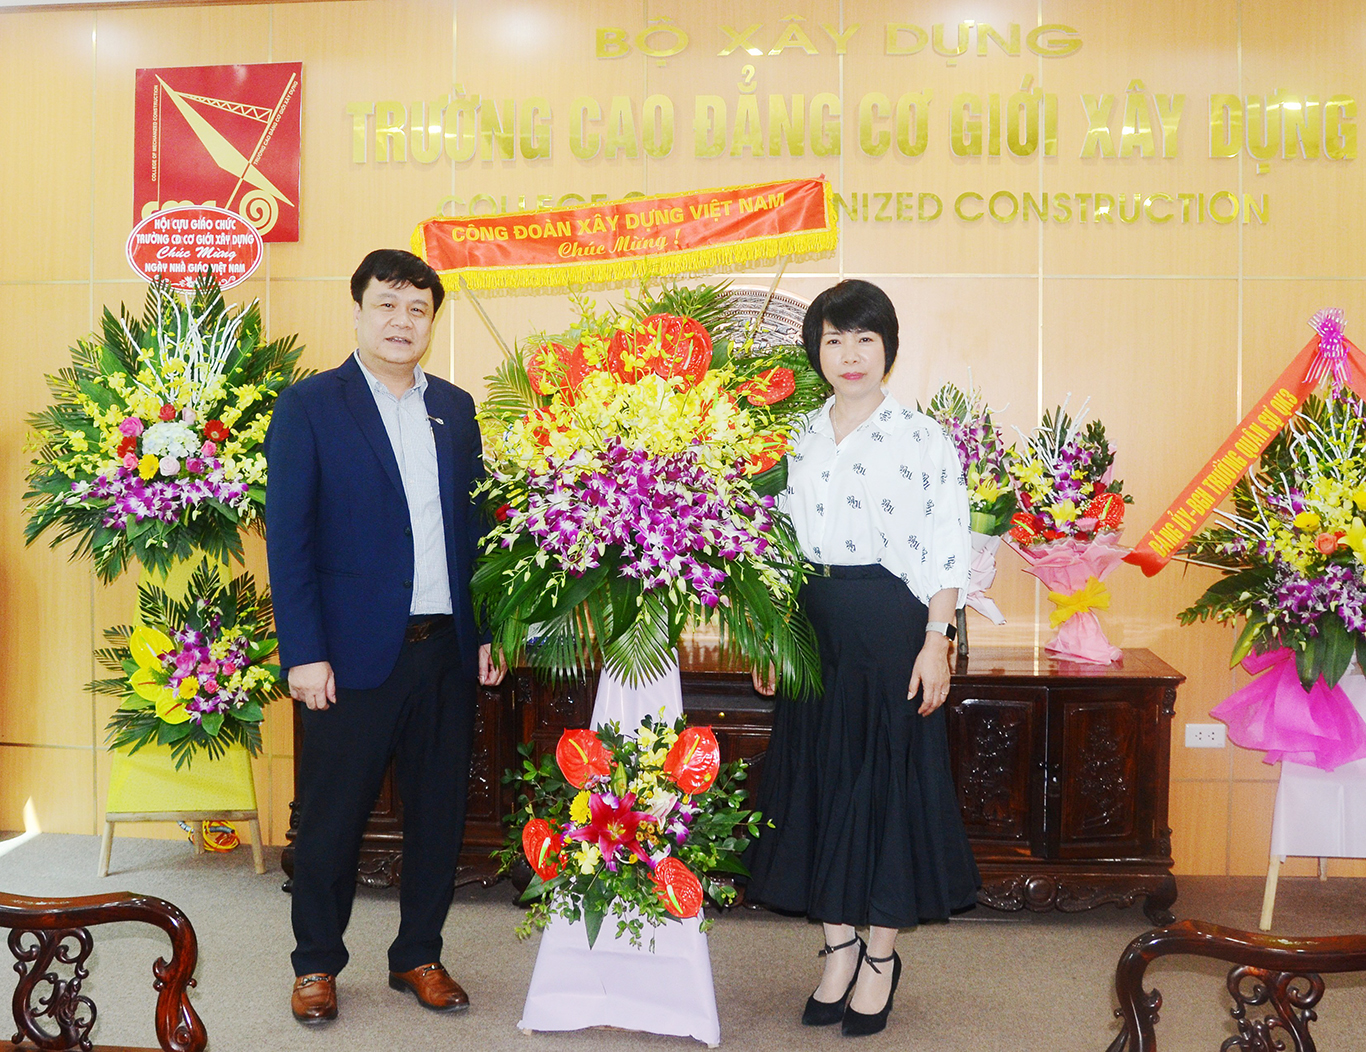 Lãnh đạo Công đoàn Xây dựng Việt Nam đến thăm và chúc mừng trường Cao đẳng Cơ giới Xây dựng nhân dịp ngày nhà giáo Việt Nam 20/11